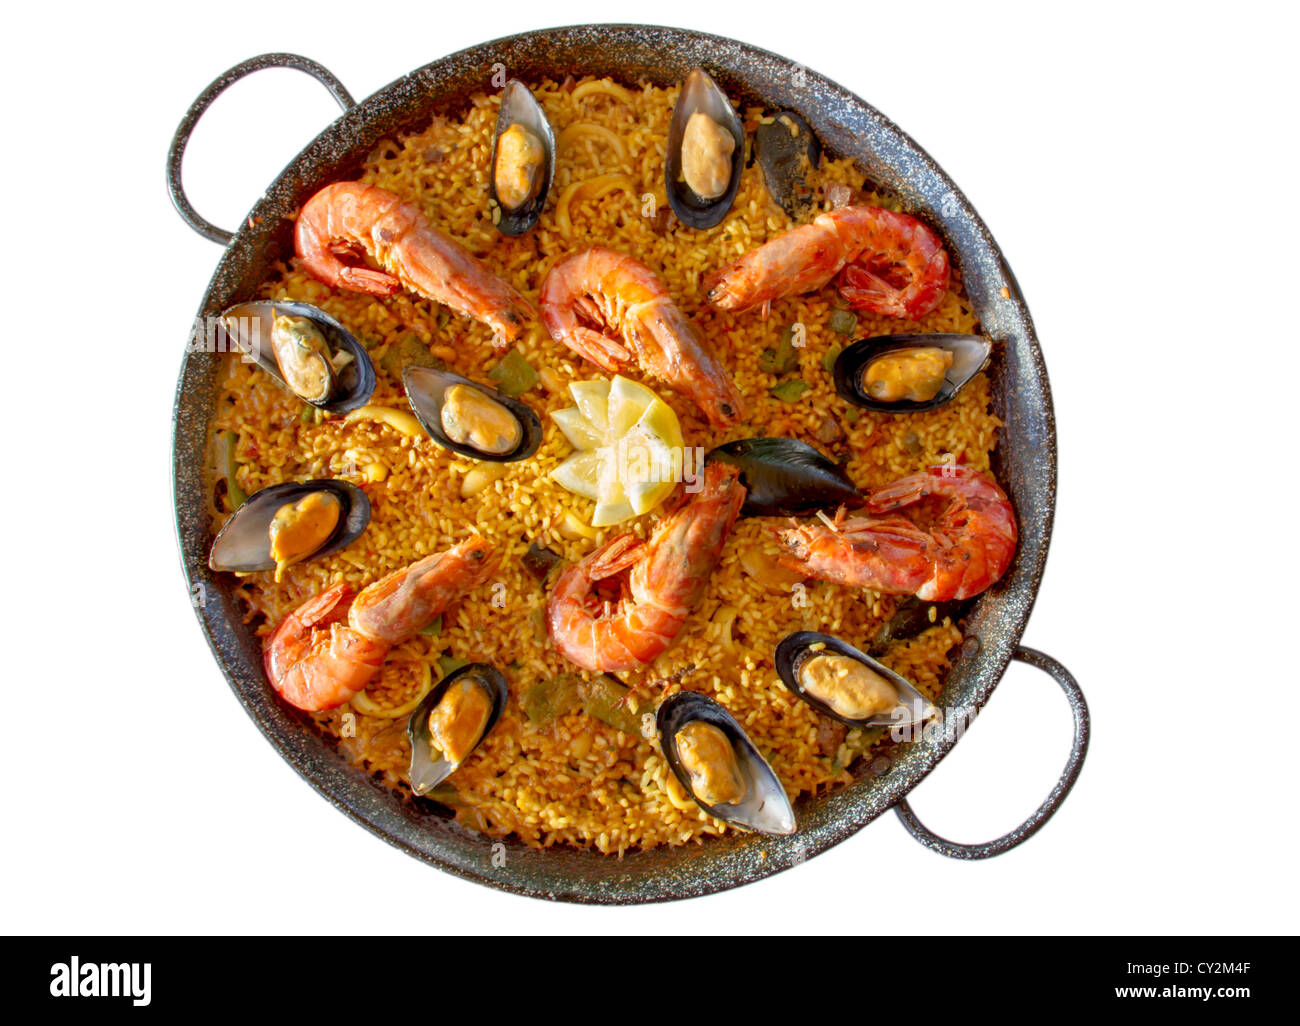 Spanish paella from Valencia Stock Photo